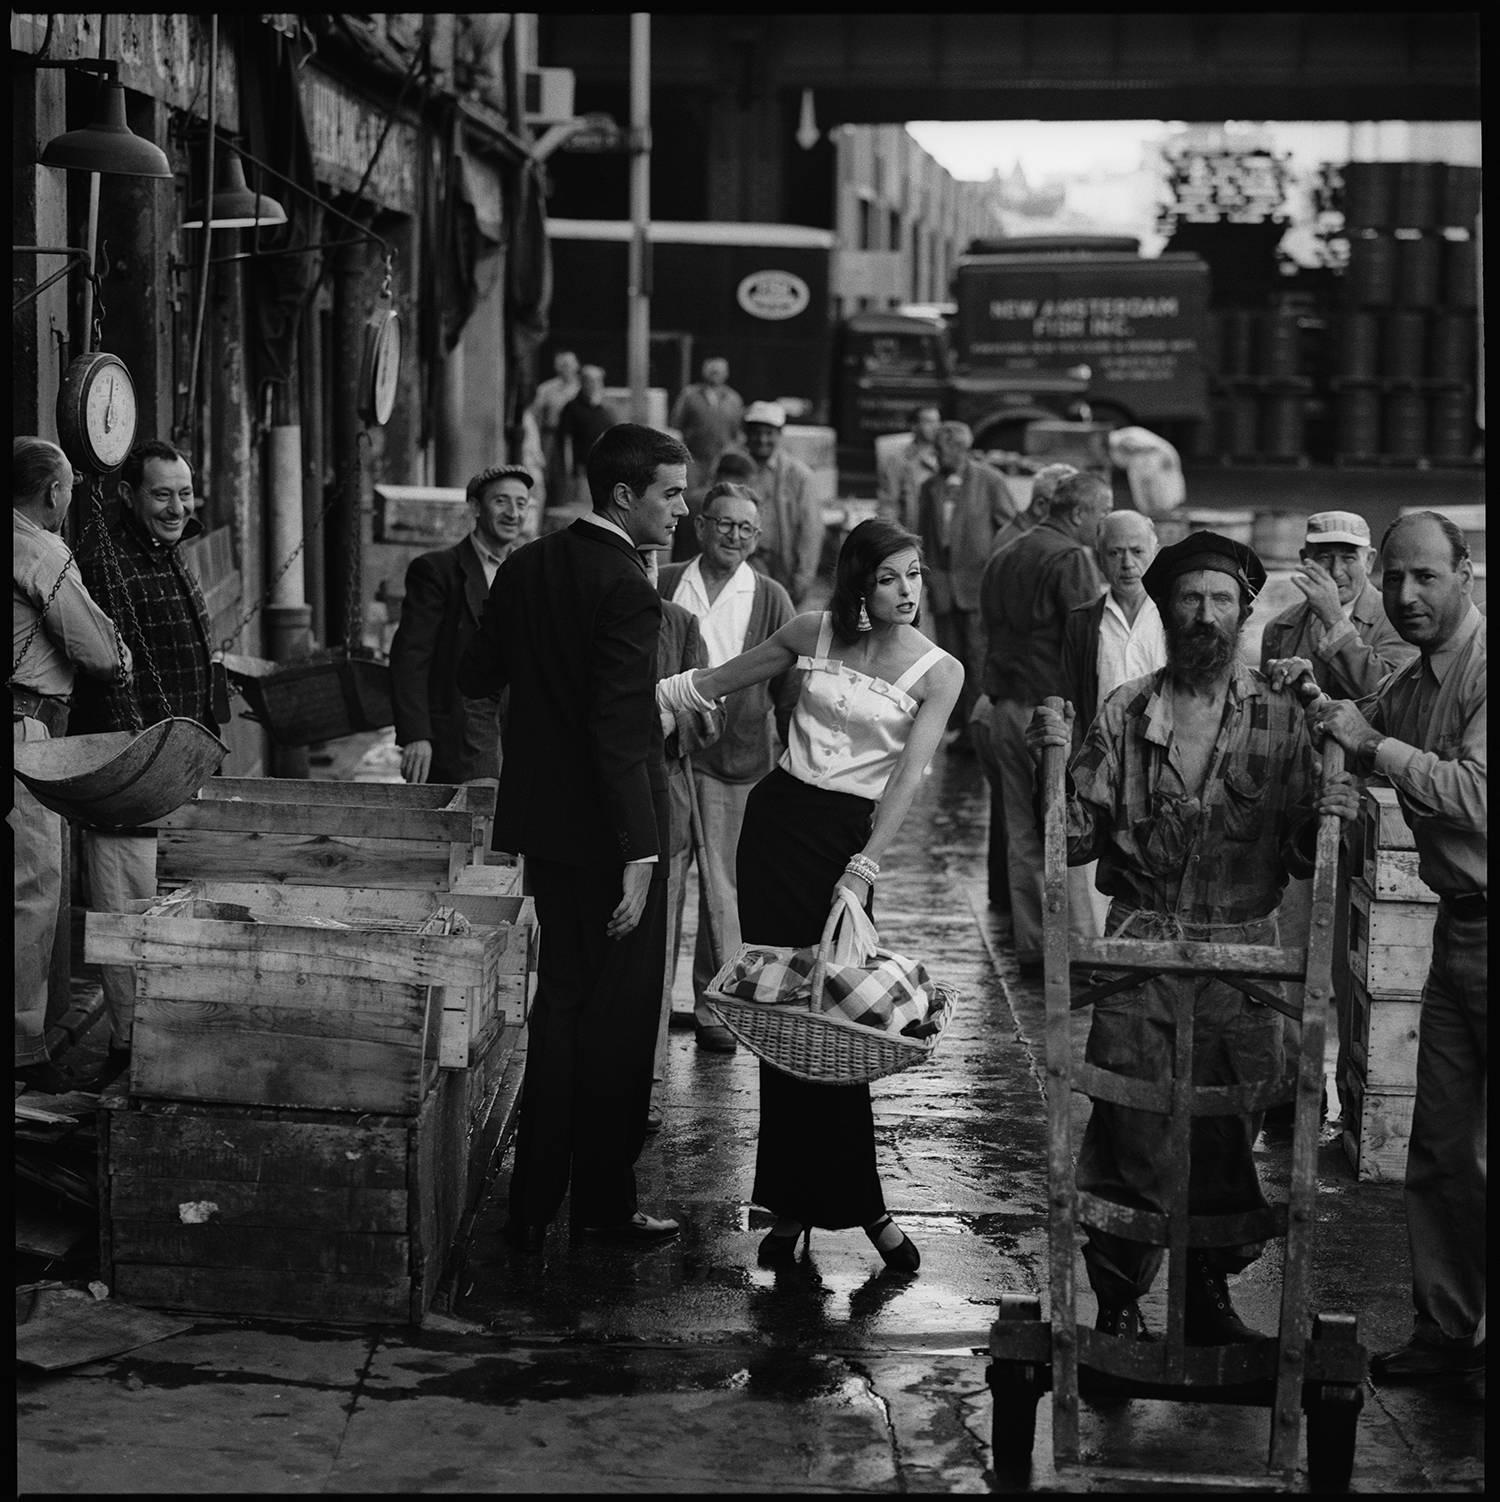 Market Fish Market, 1958 - Jerry Schatzberg (photographie de portrait)
Signé au dos
Épreuve à la gélatine argentée
8 x 10 pouces, édition de 25 + 5 AP - 4 500
11 x 14 pouces, édition de 25 + 5 AP - 7 000
16 x 20 pouces, édition de 25 + 5 AP - 10